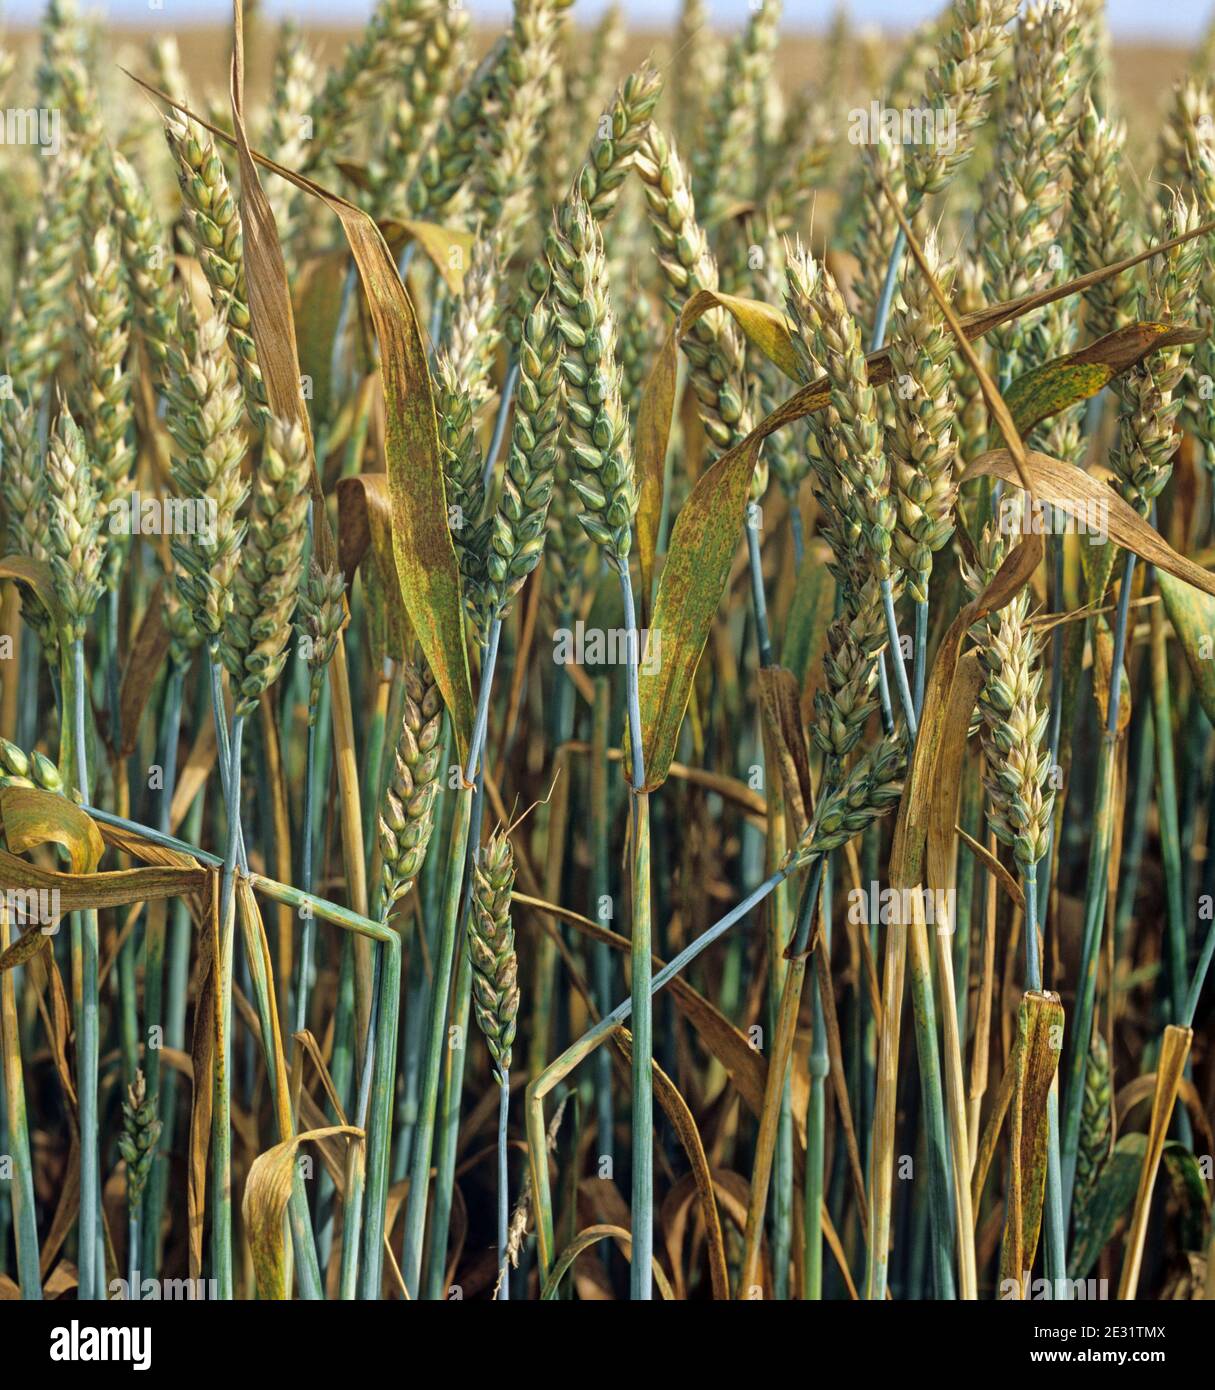 Weizenblattrost oder brauner Rost (Puccinia triticina) Infektion auf den Flaggenblättern und Ernte eines Winterweizens Im Ohr Stockfoto